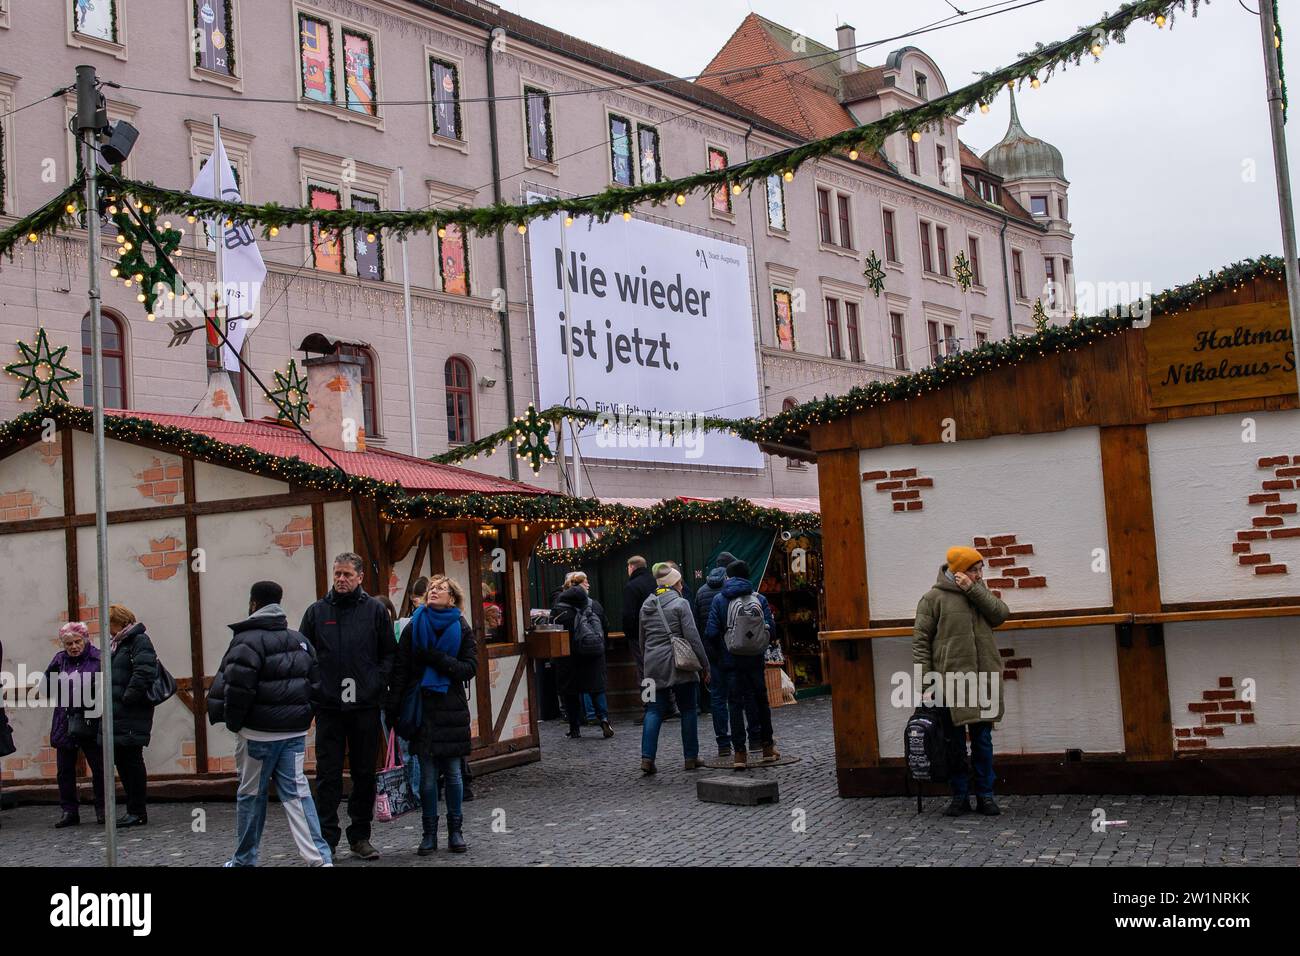 Augsaburg, Deutschland-15. Dezember 2023: An einem Gebäude am Weihnachtsmarkt hängt Ein Schild, das gegen Rassismus und Antisemitismus aufruft Stockfoto